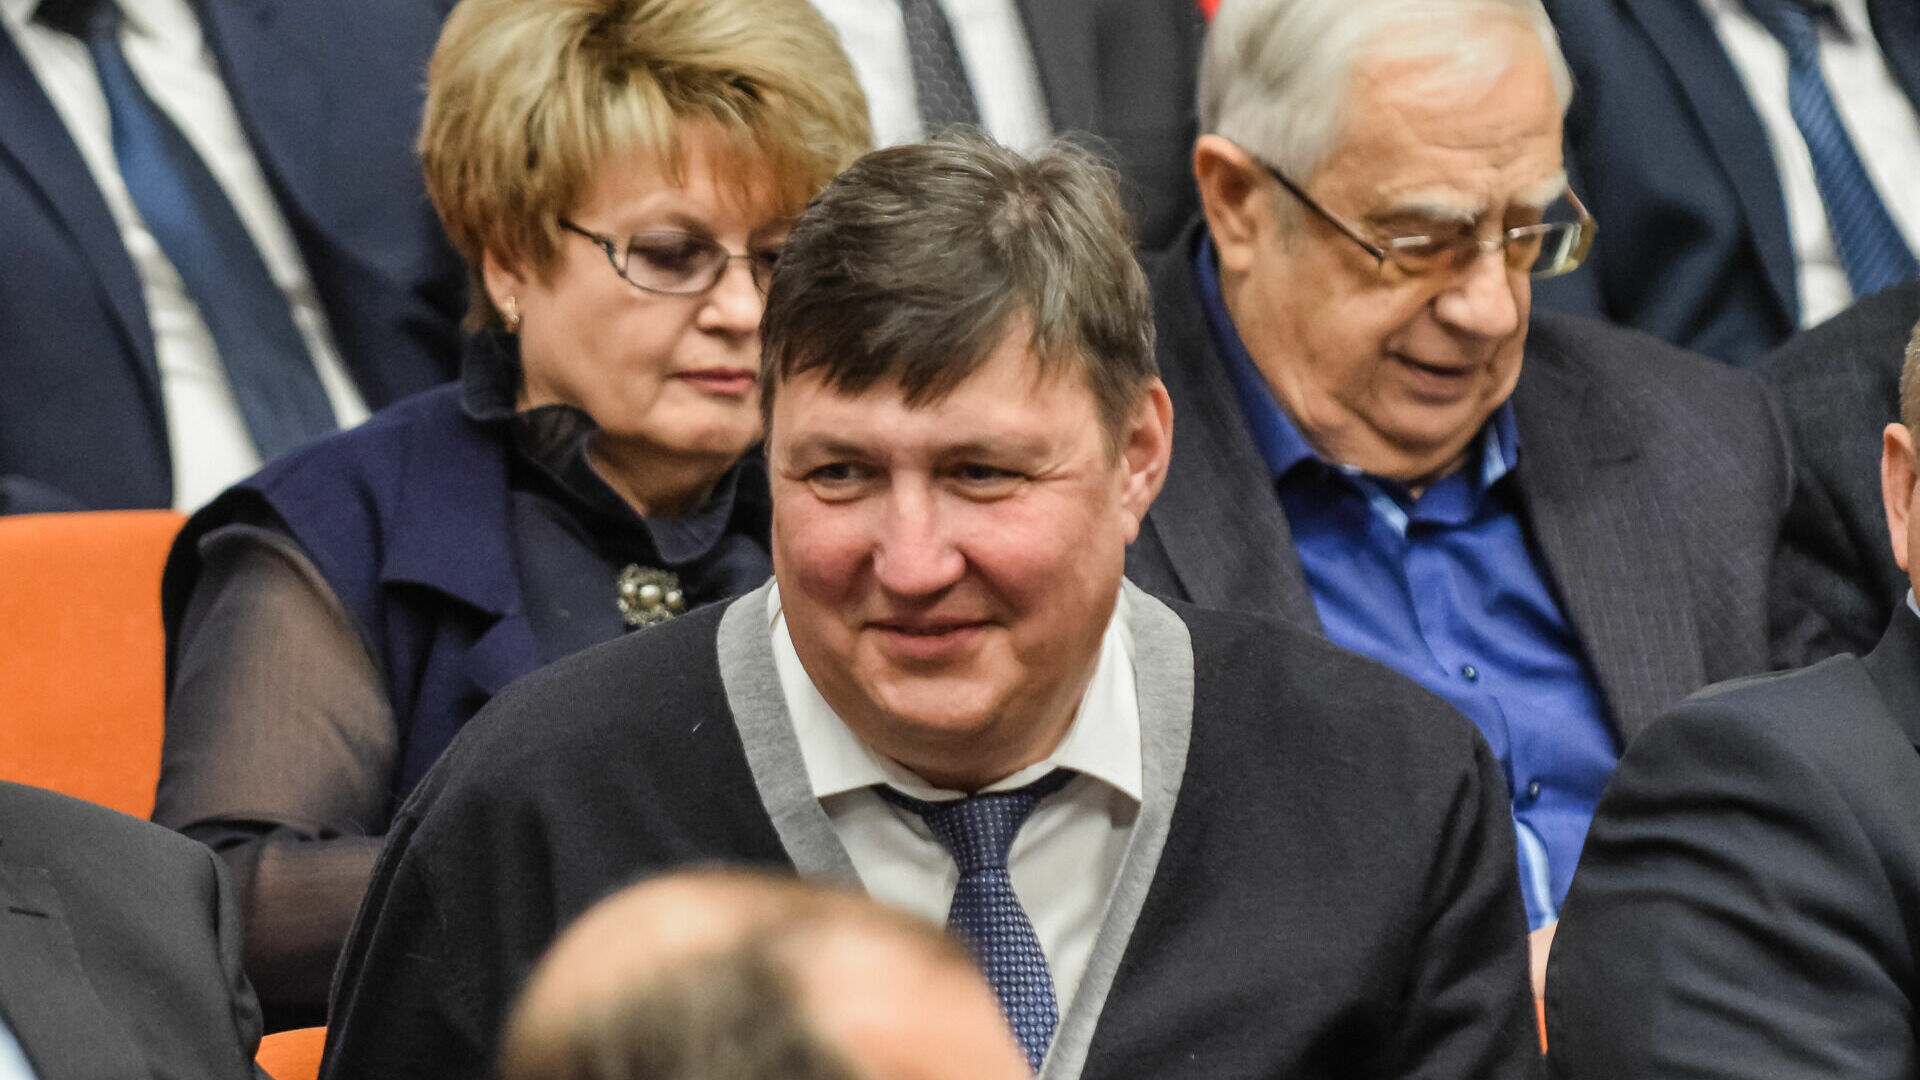 Имя депутата Александра Осипова нередко связано со скандалами.